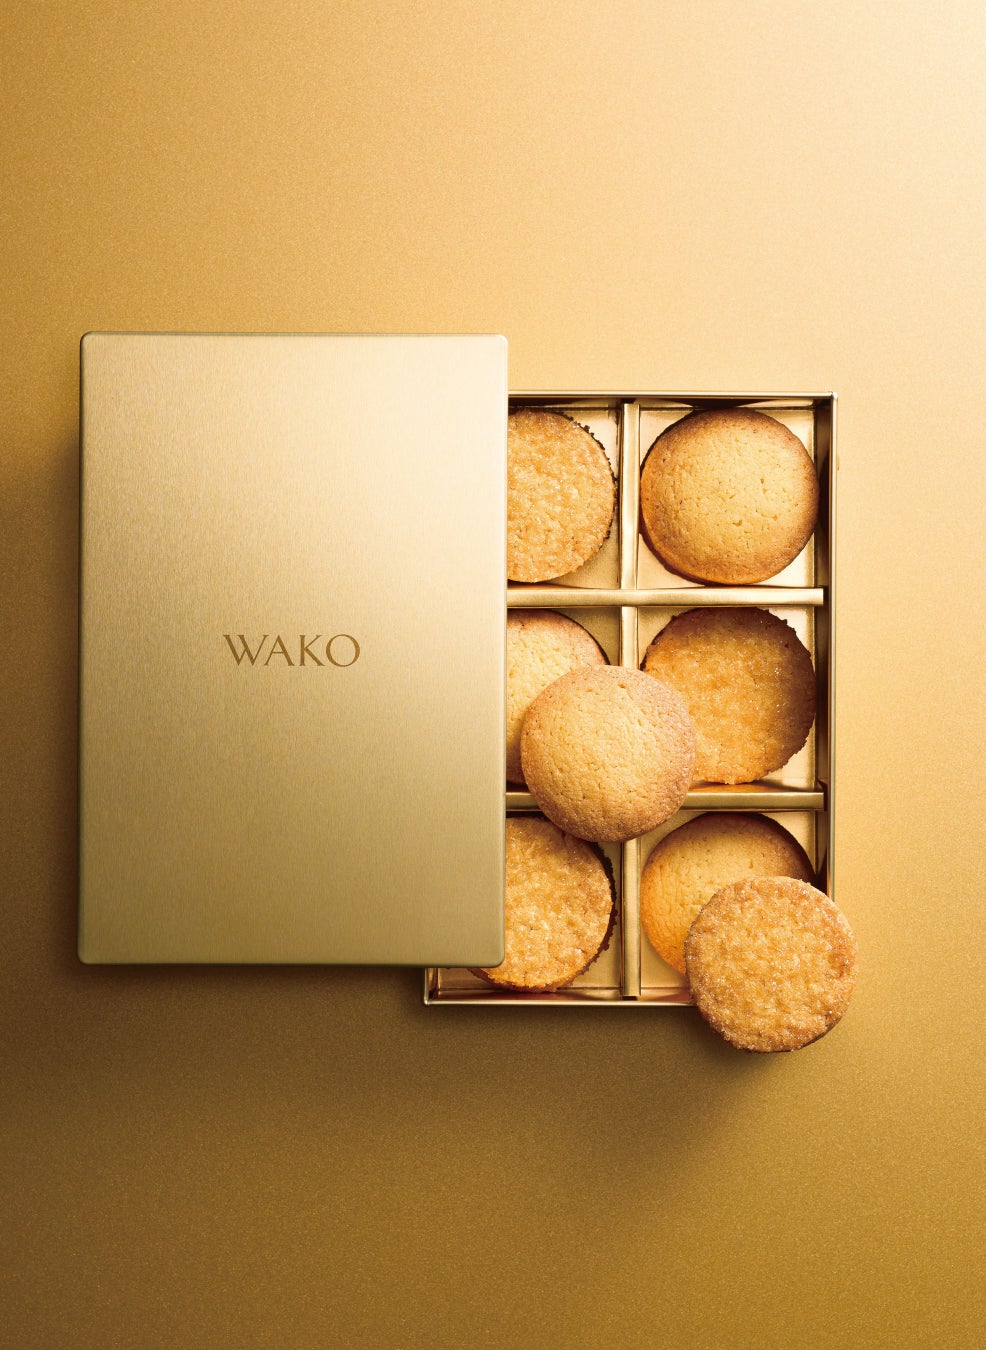 【銀座・和光】和光を代表するアトリエメードのクッキー缶「WAKOクッキー」を4月26日(金)より発売